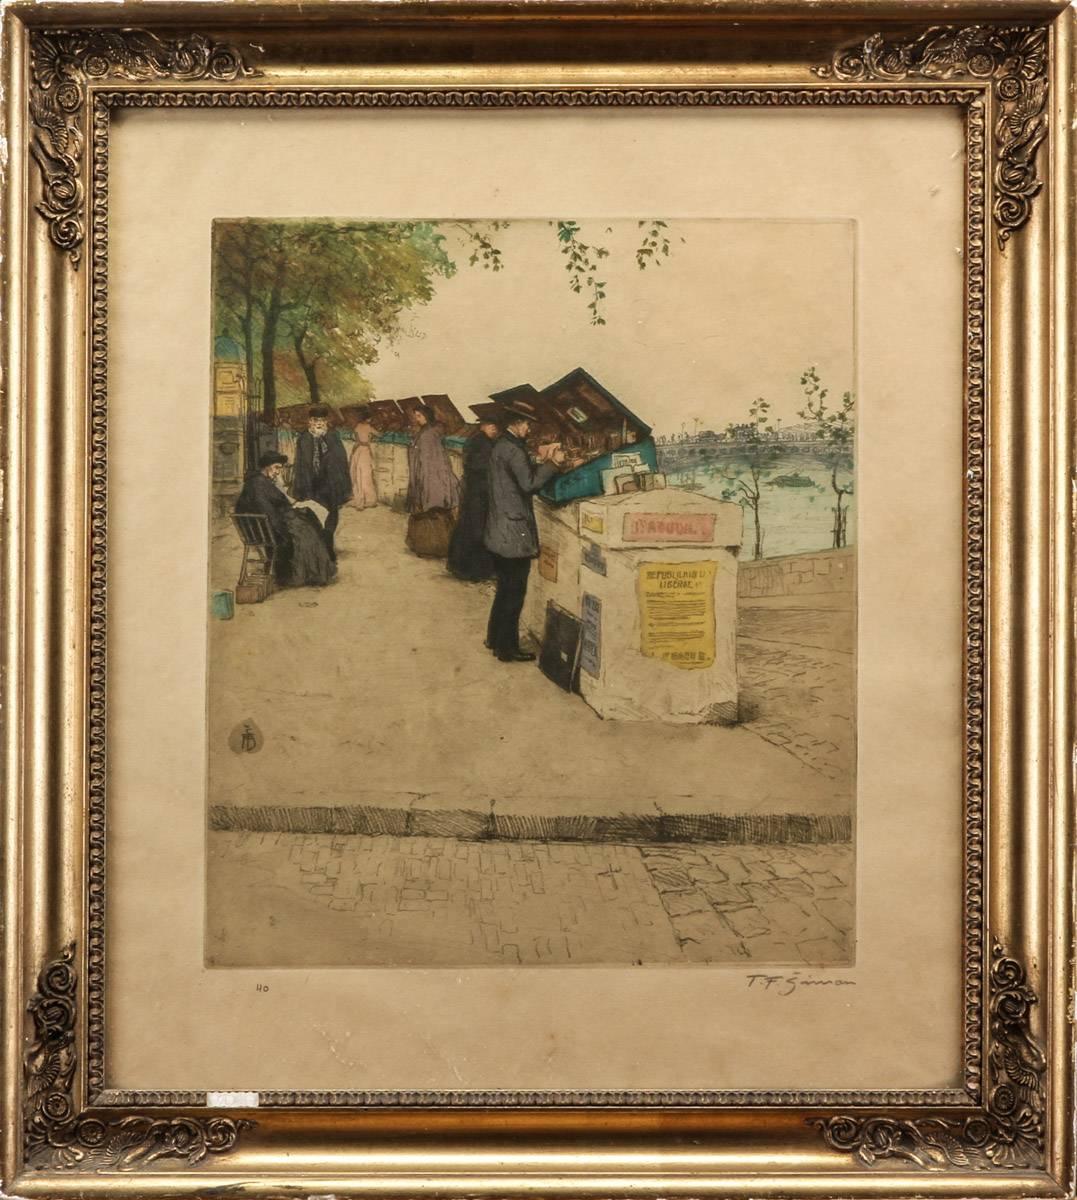 Tavik Frantisek Simon (1877-1942). 
Szene an der Seine, Paris. Farbige Radierung. 
Abmessungen: 
38 x 32 cm. (60 x 54) cm.